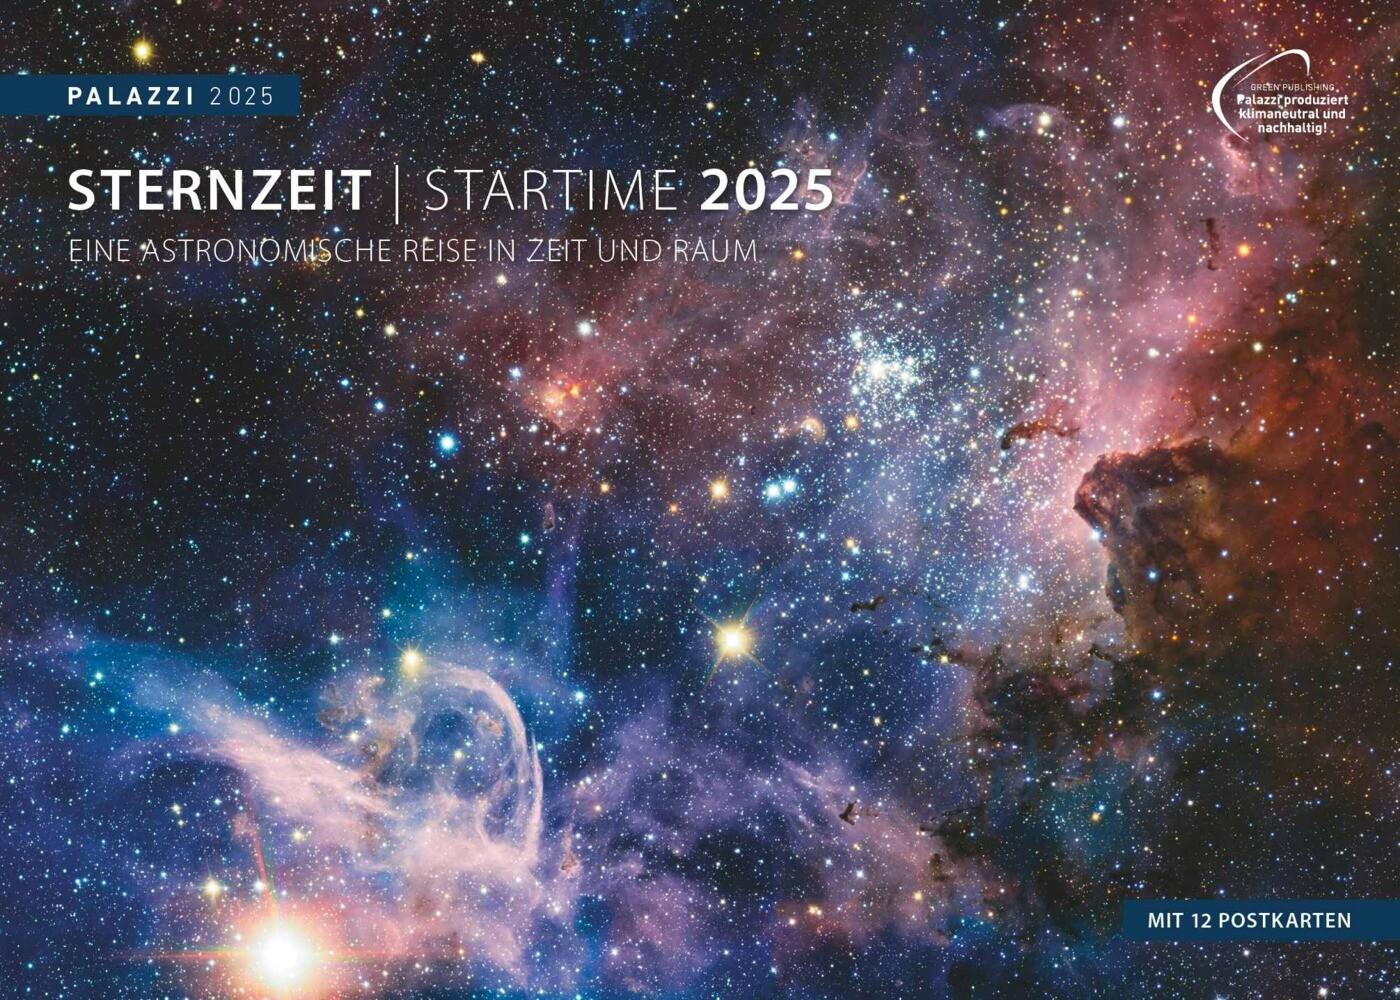 PALAZZI - Sternzeit 2025 Wandkalender, 70x50cm, Posterkalender mit brillanten Aufnahmen aus unserem Universum, eine astronomische Reise in Zeit und Raum, Textinfos, internationales Kalendarium